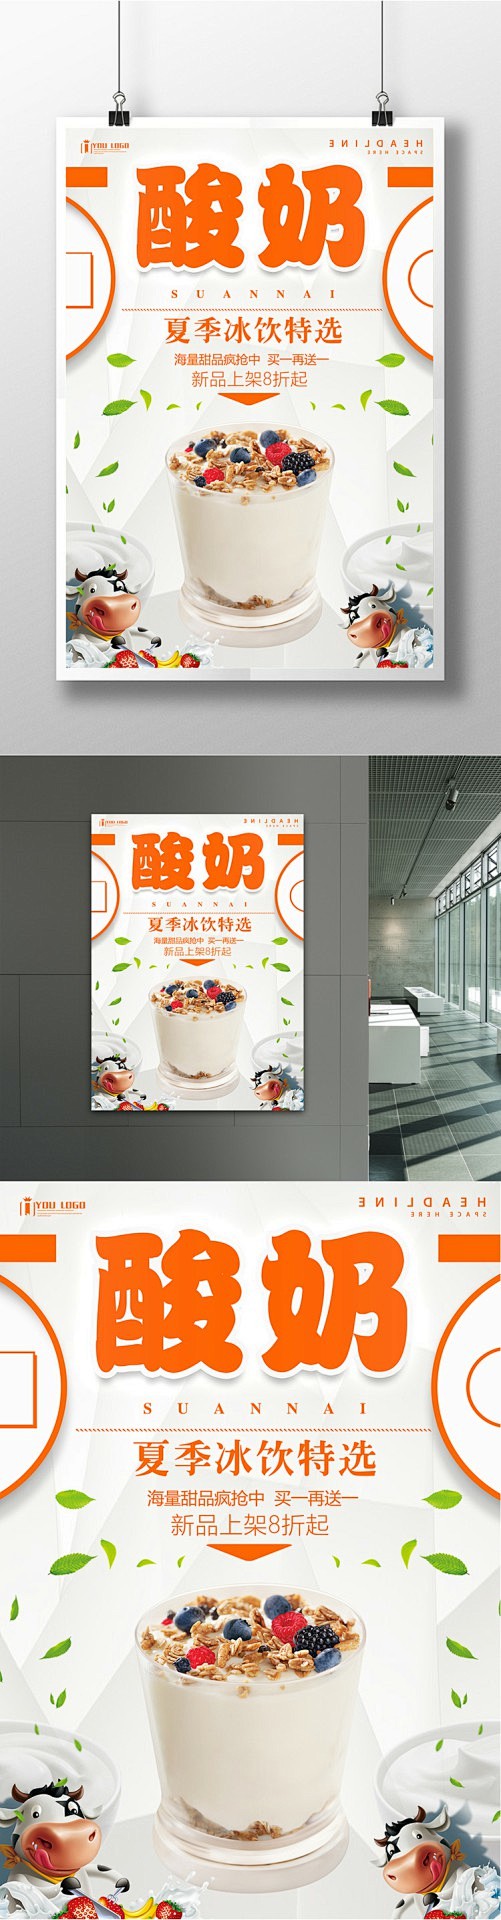 酸奶餐饮美食系列海报设计甜品海报 甜品展...